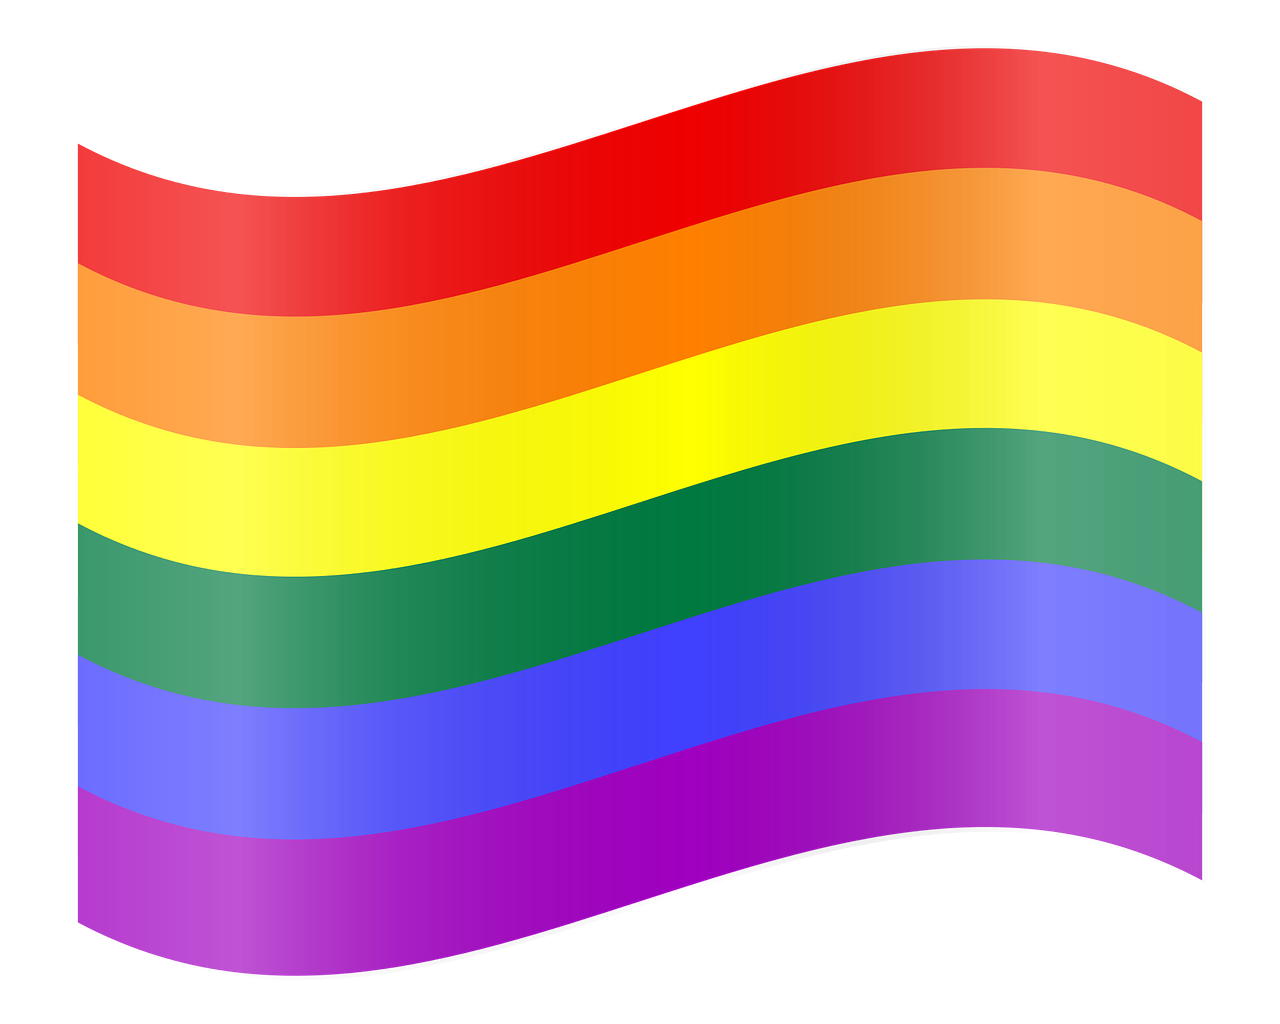 ¿Qué logros ha obtenido el movimiento LGBT?